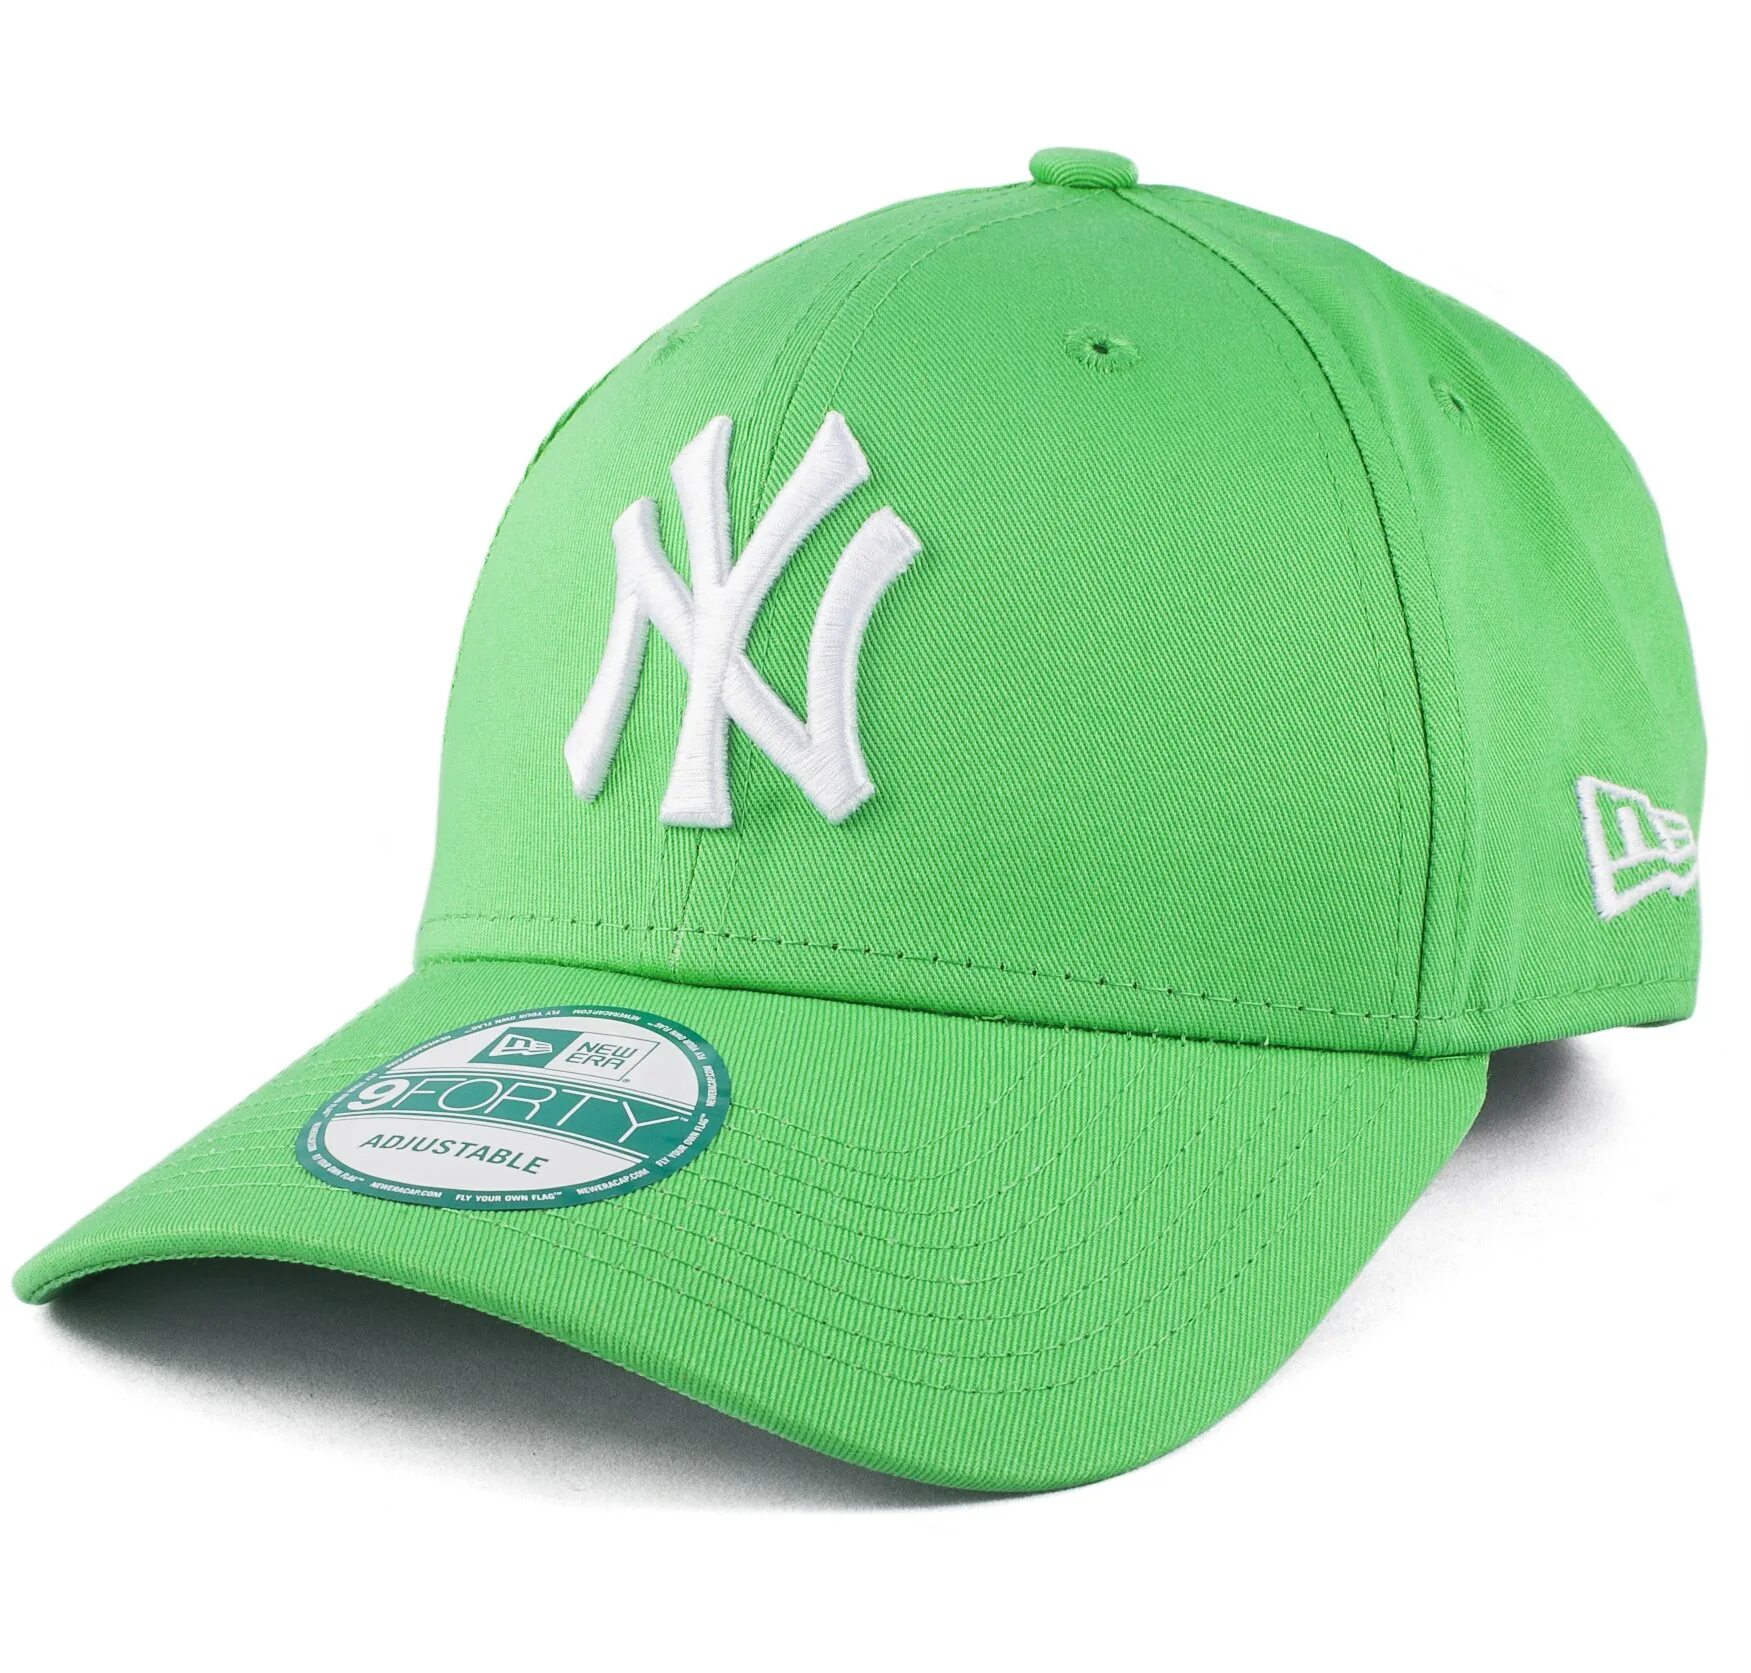 Бейсболка мужская зеленая. Кепка la New era зеленая. Бейсболка New era New York зеленая. Зеленая кепка New era NY. Бейсболки New era Snapback зеленая.